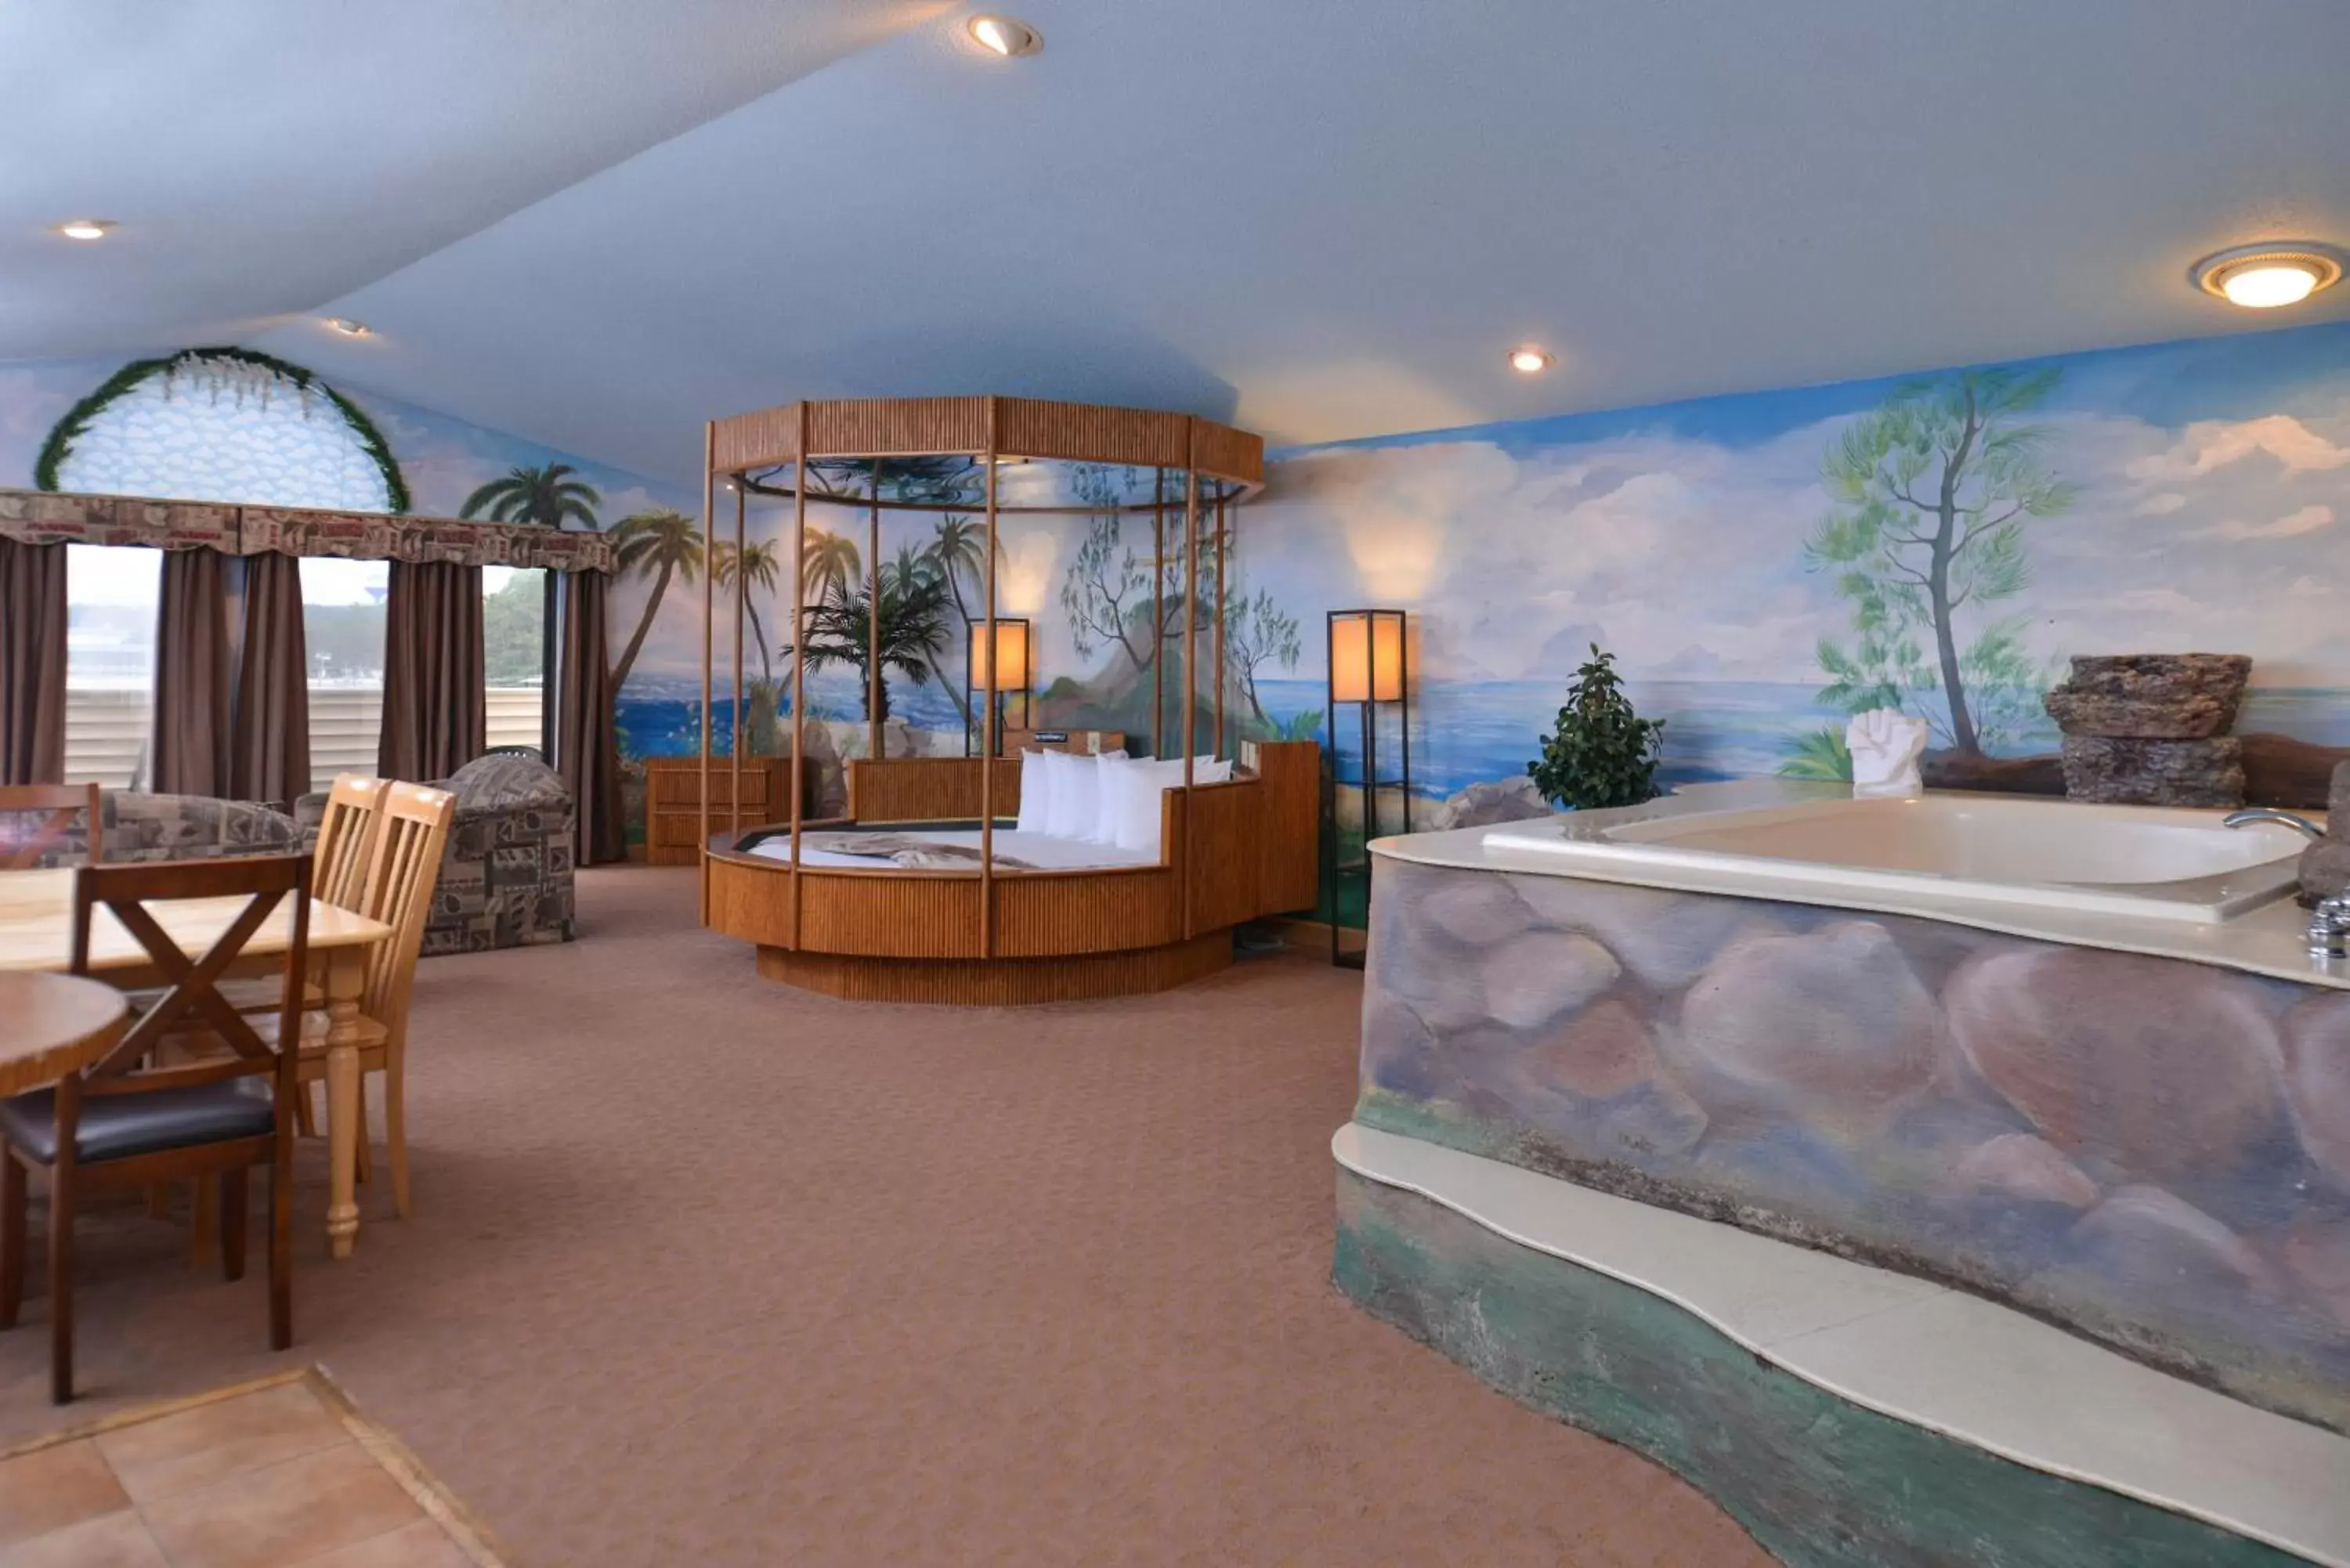 Hot Tub, Lobby/Reception in Atlantis Family Waterpark Hotel